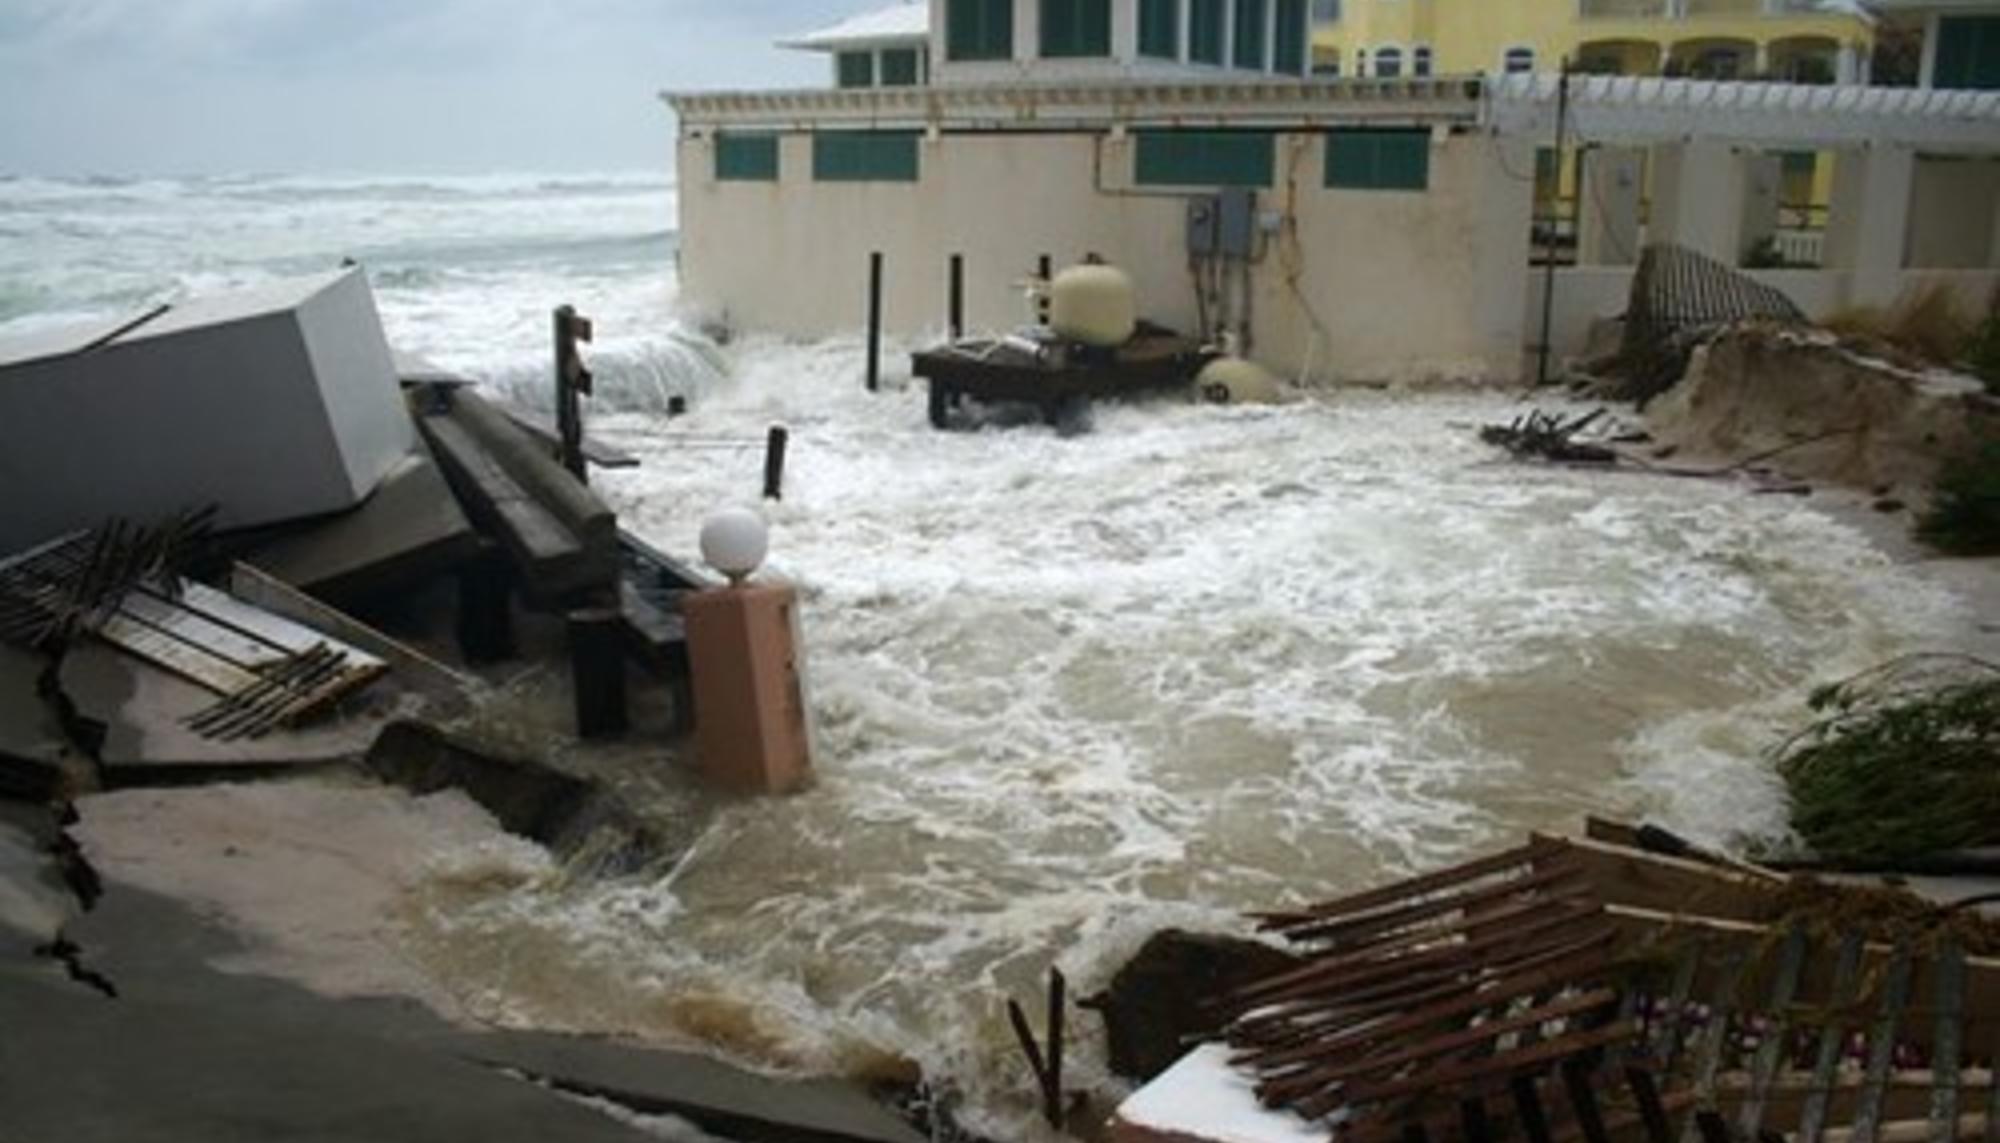 Las tormentas y aumento del nivel del mar representan un grave riesgo en las costas, incluyendo las centrales nucleares. Fuente: Beyond Nuclear